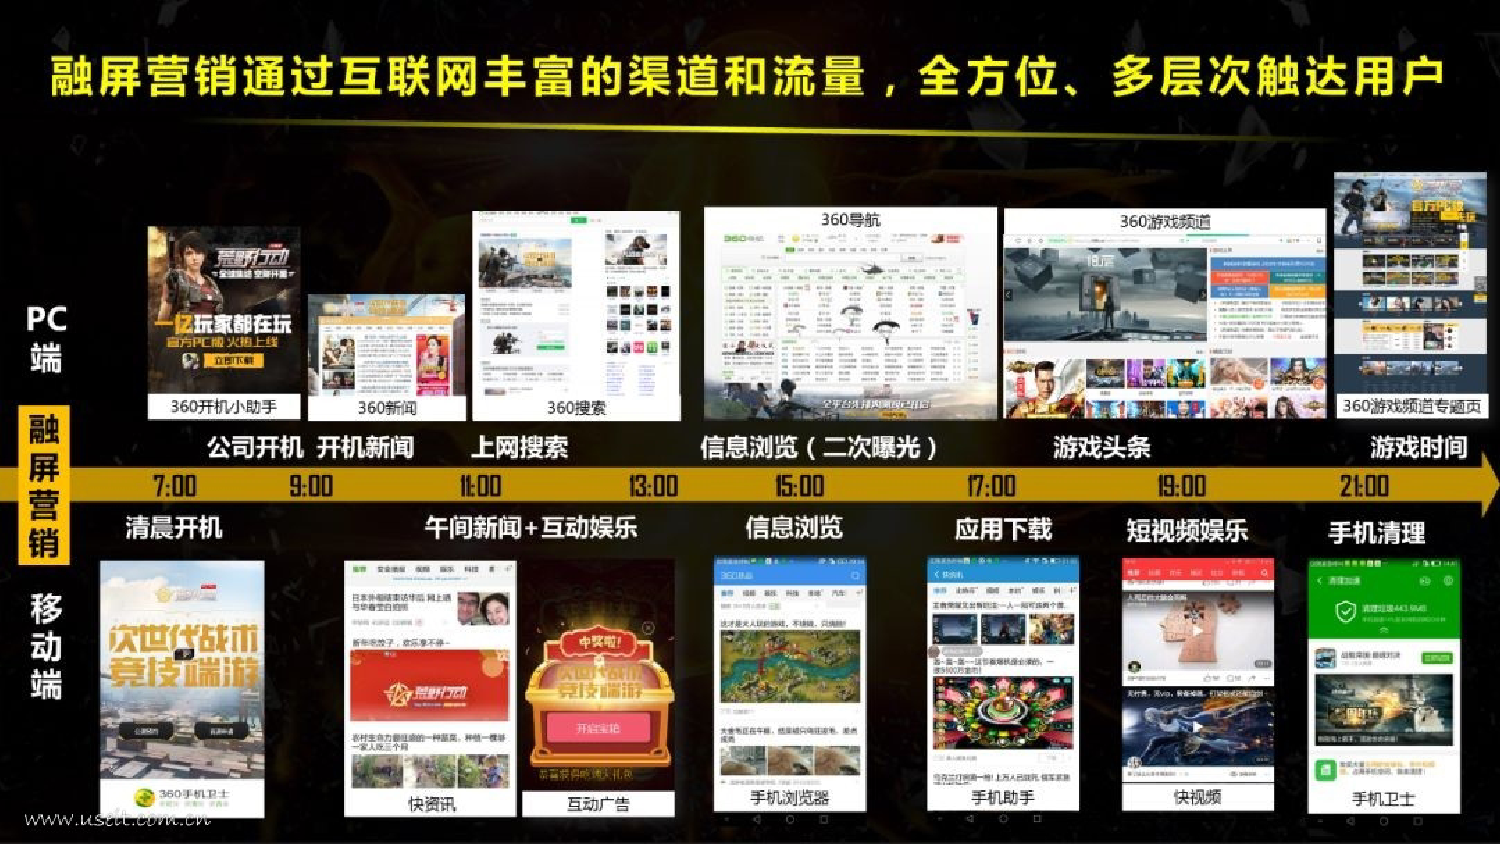 360发布《2018中国PC端游戏研究报告》